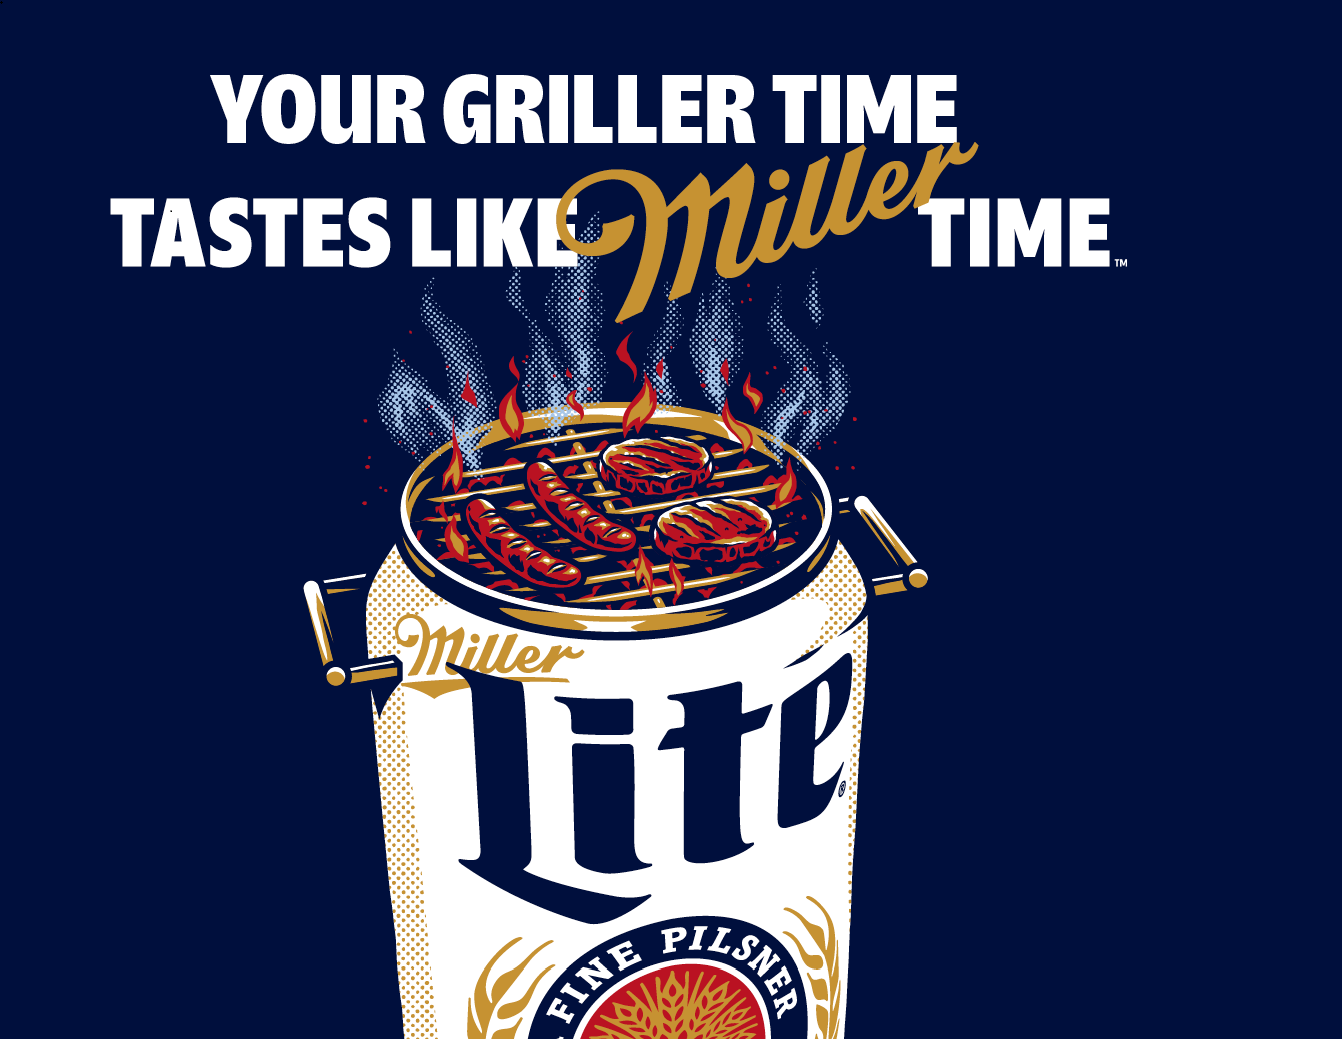 Your griller time tastes like Miller Time